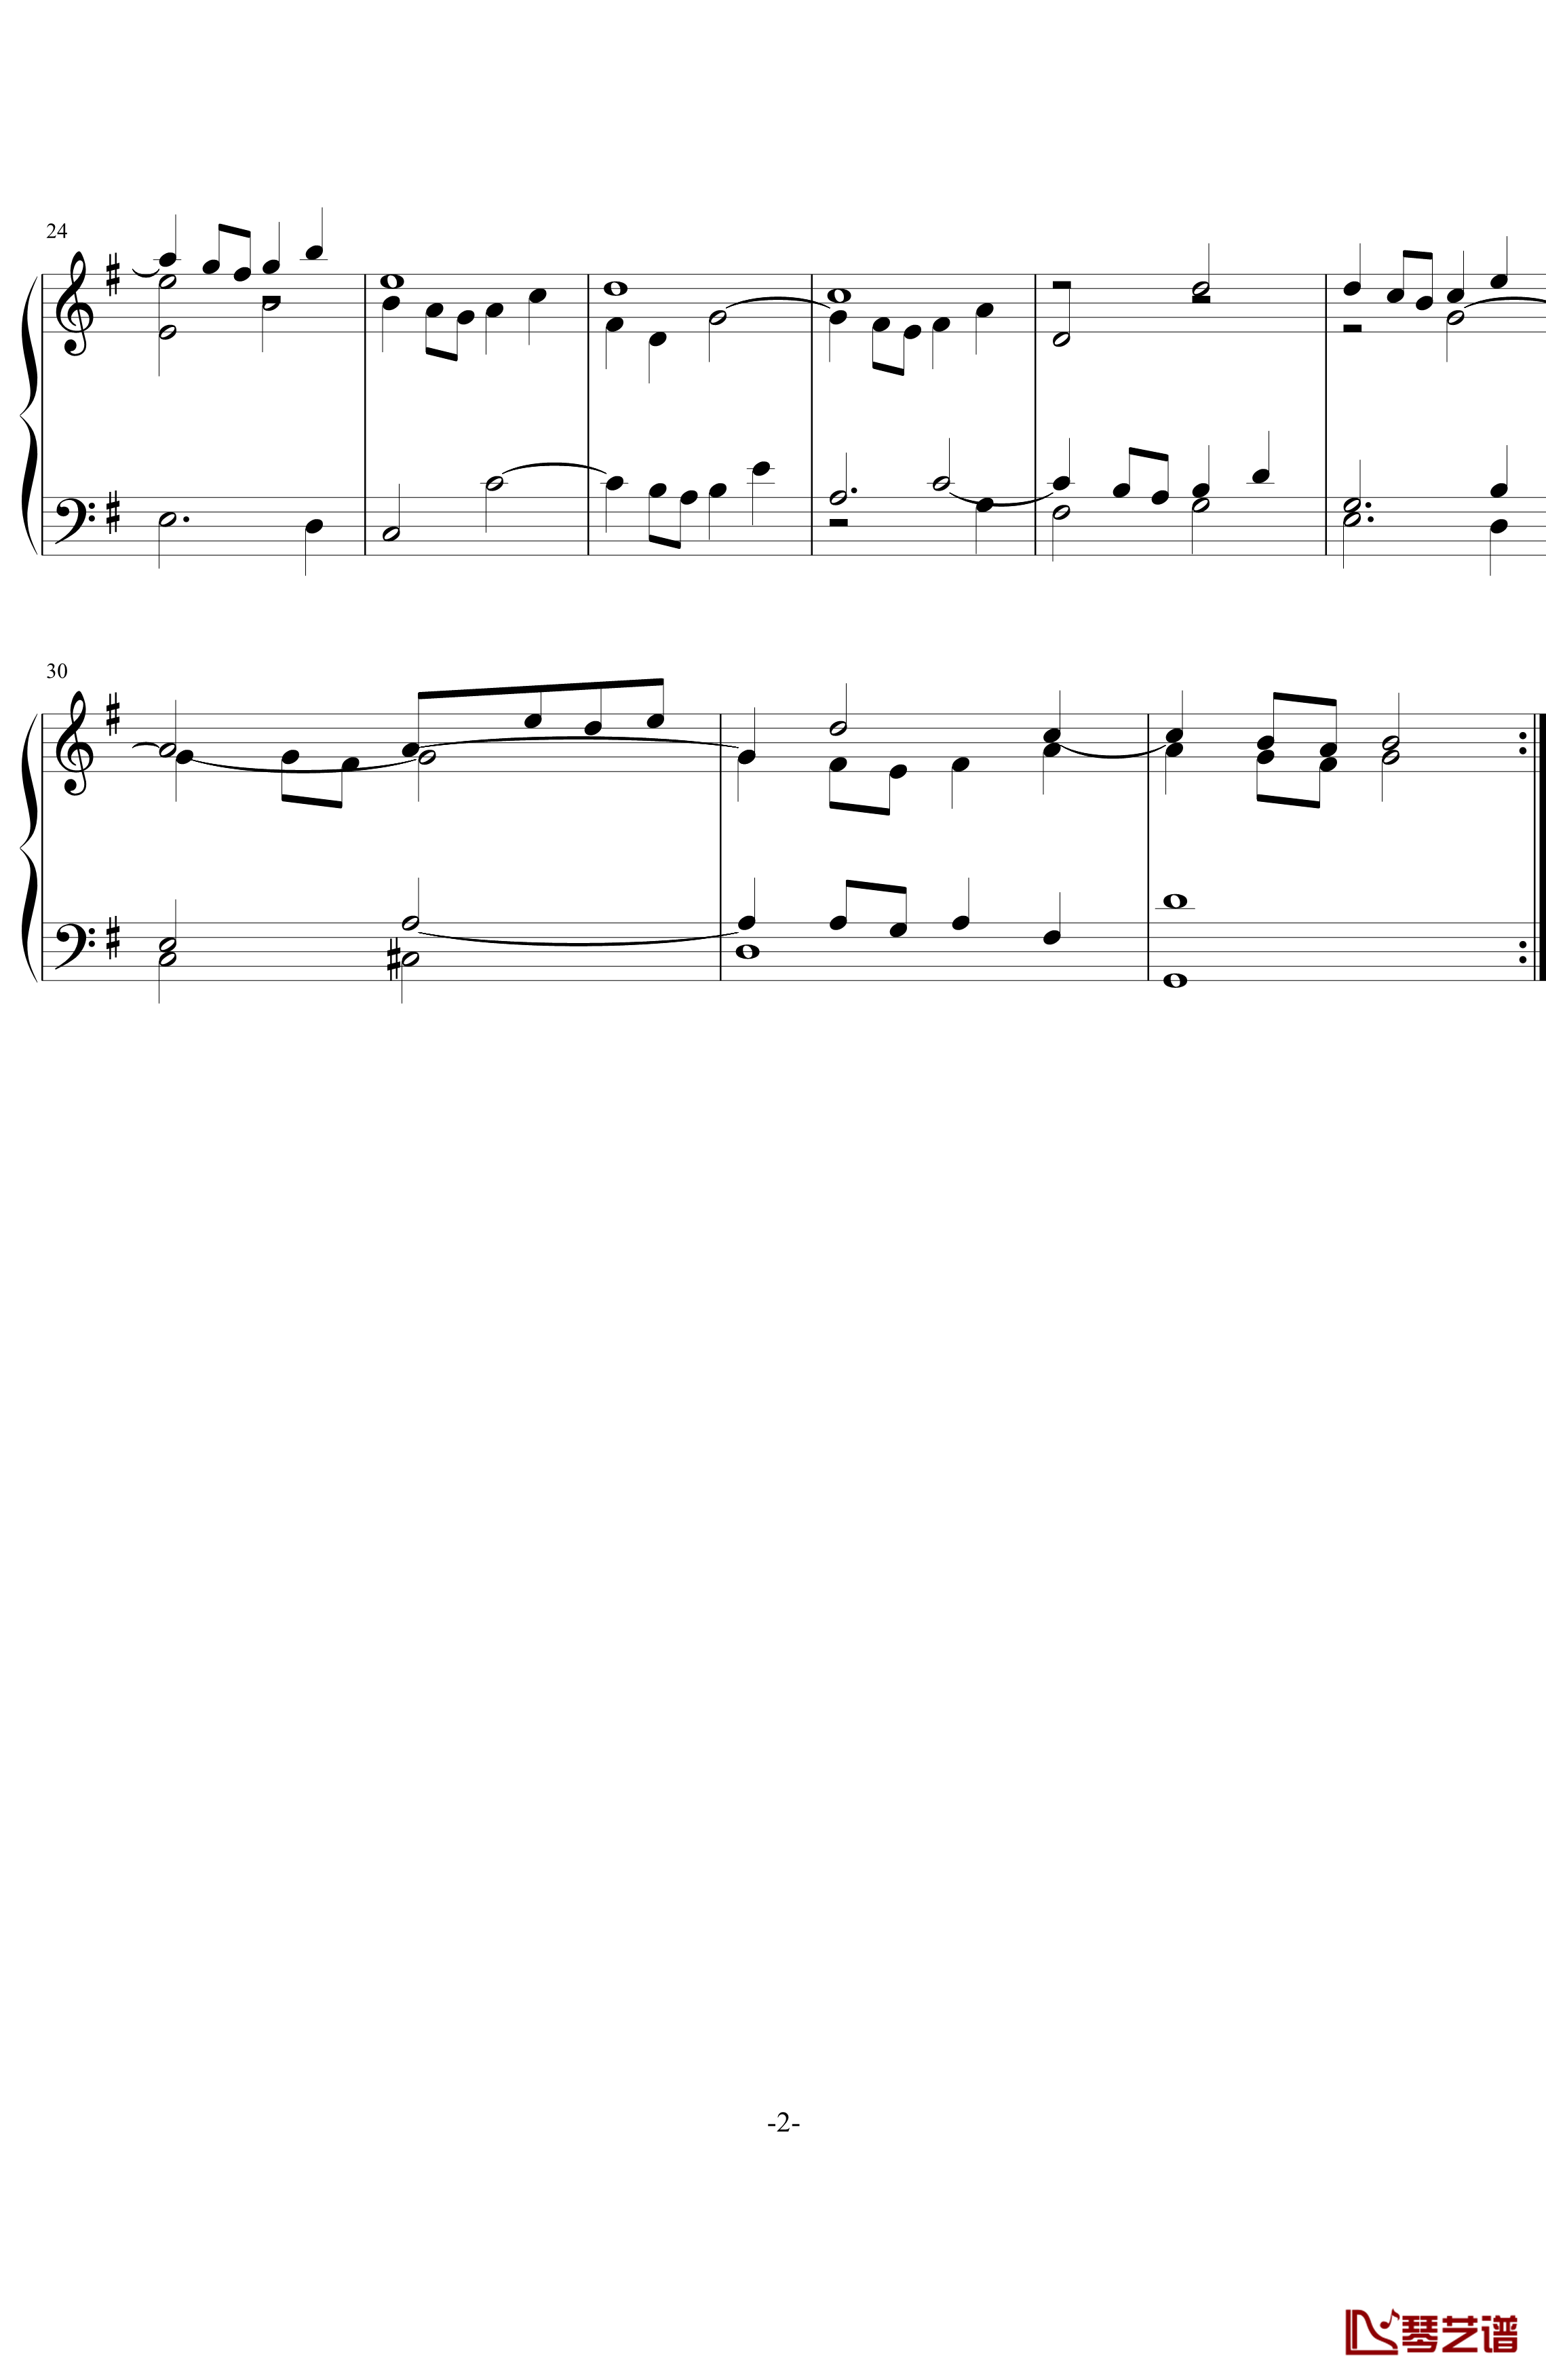 哥德堡变奏曲第20变奏钢琴谱-巴赫-P.E.Bach2